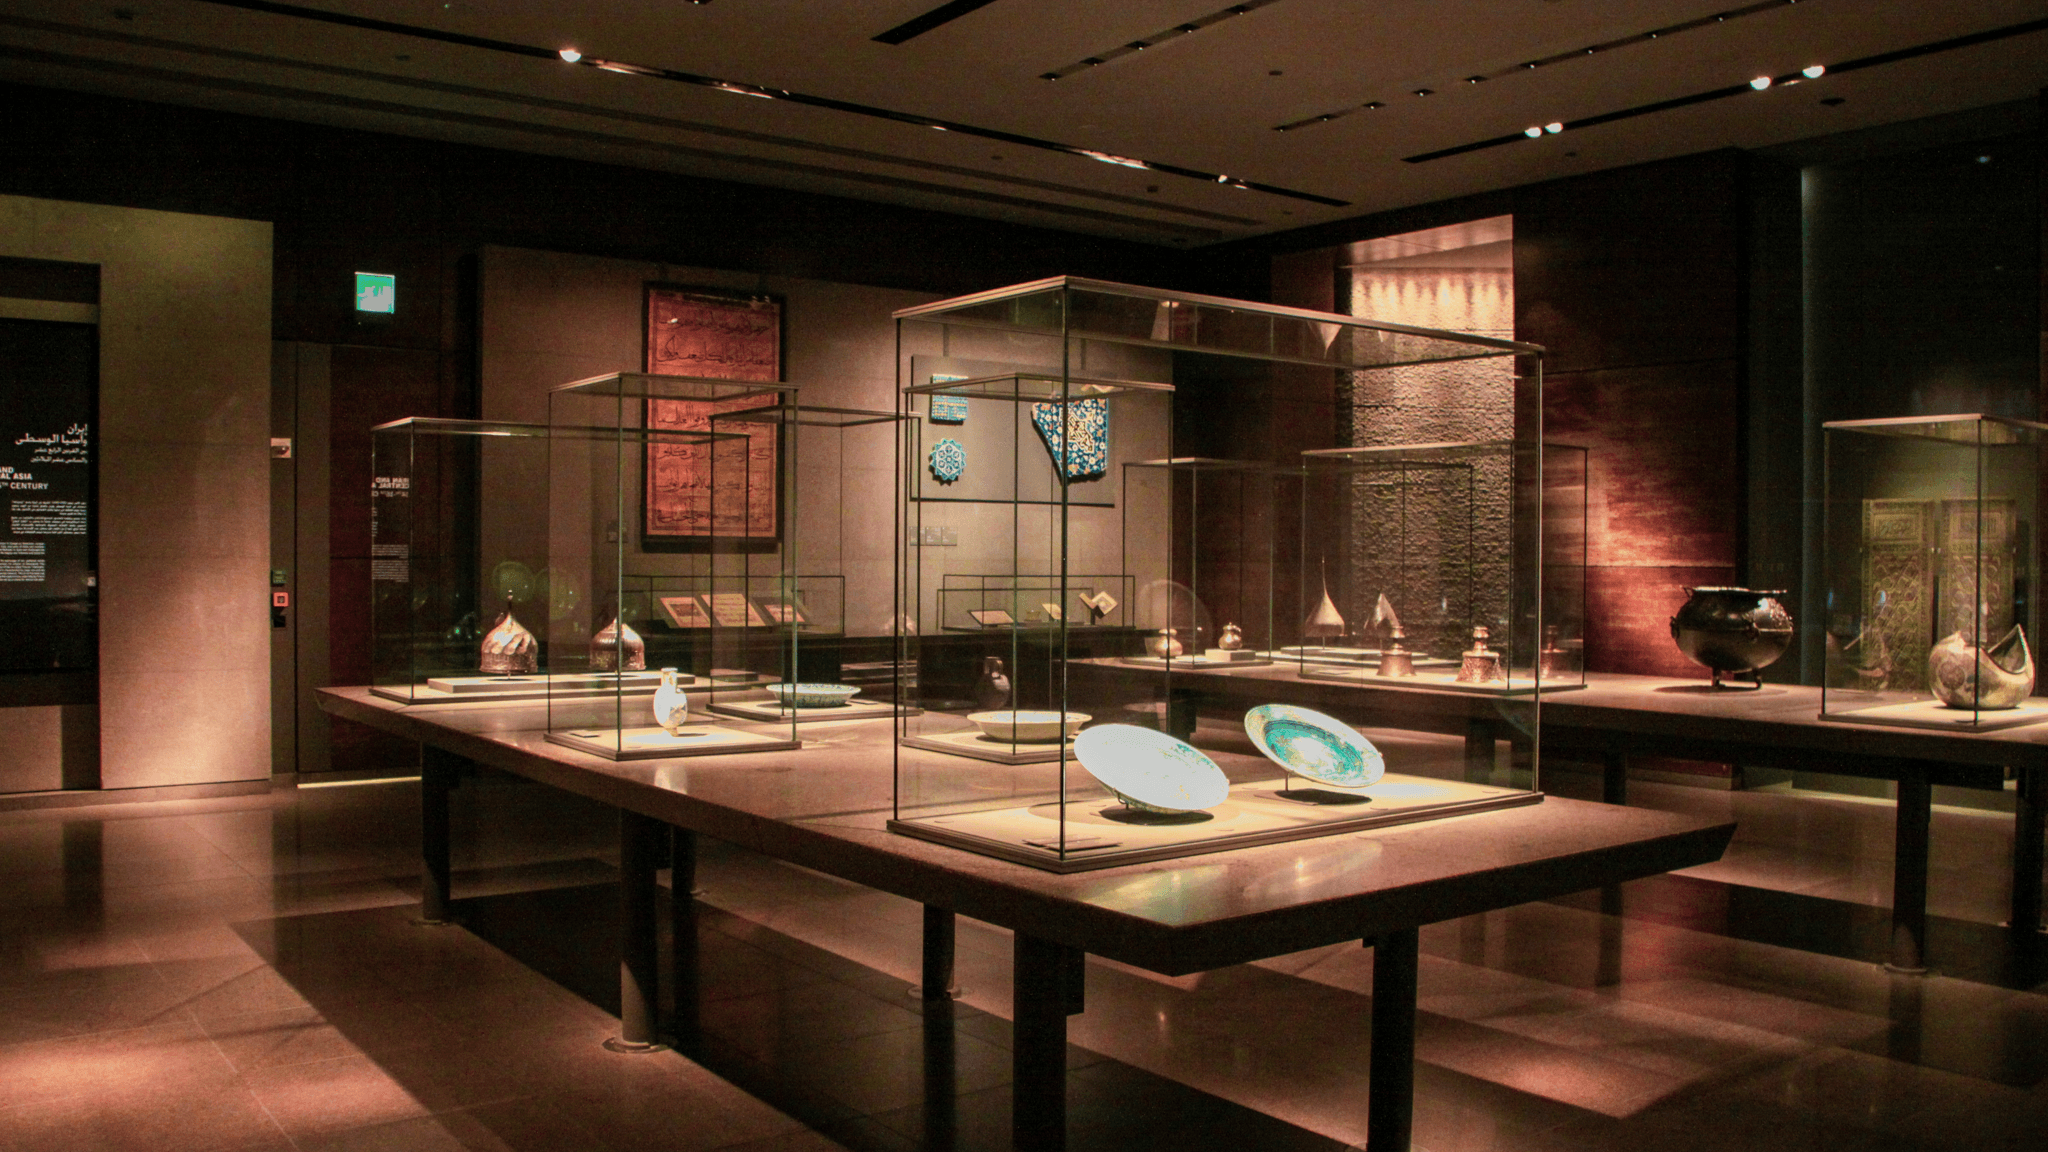 Al Ajyal Museum (Generations Museum)